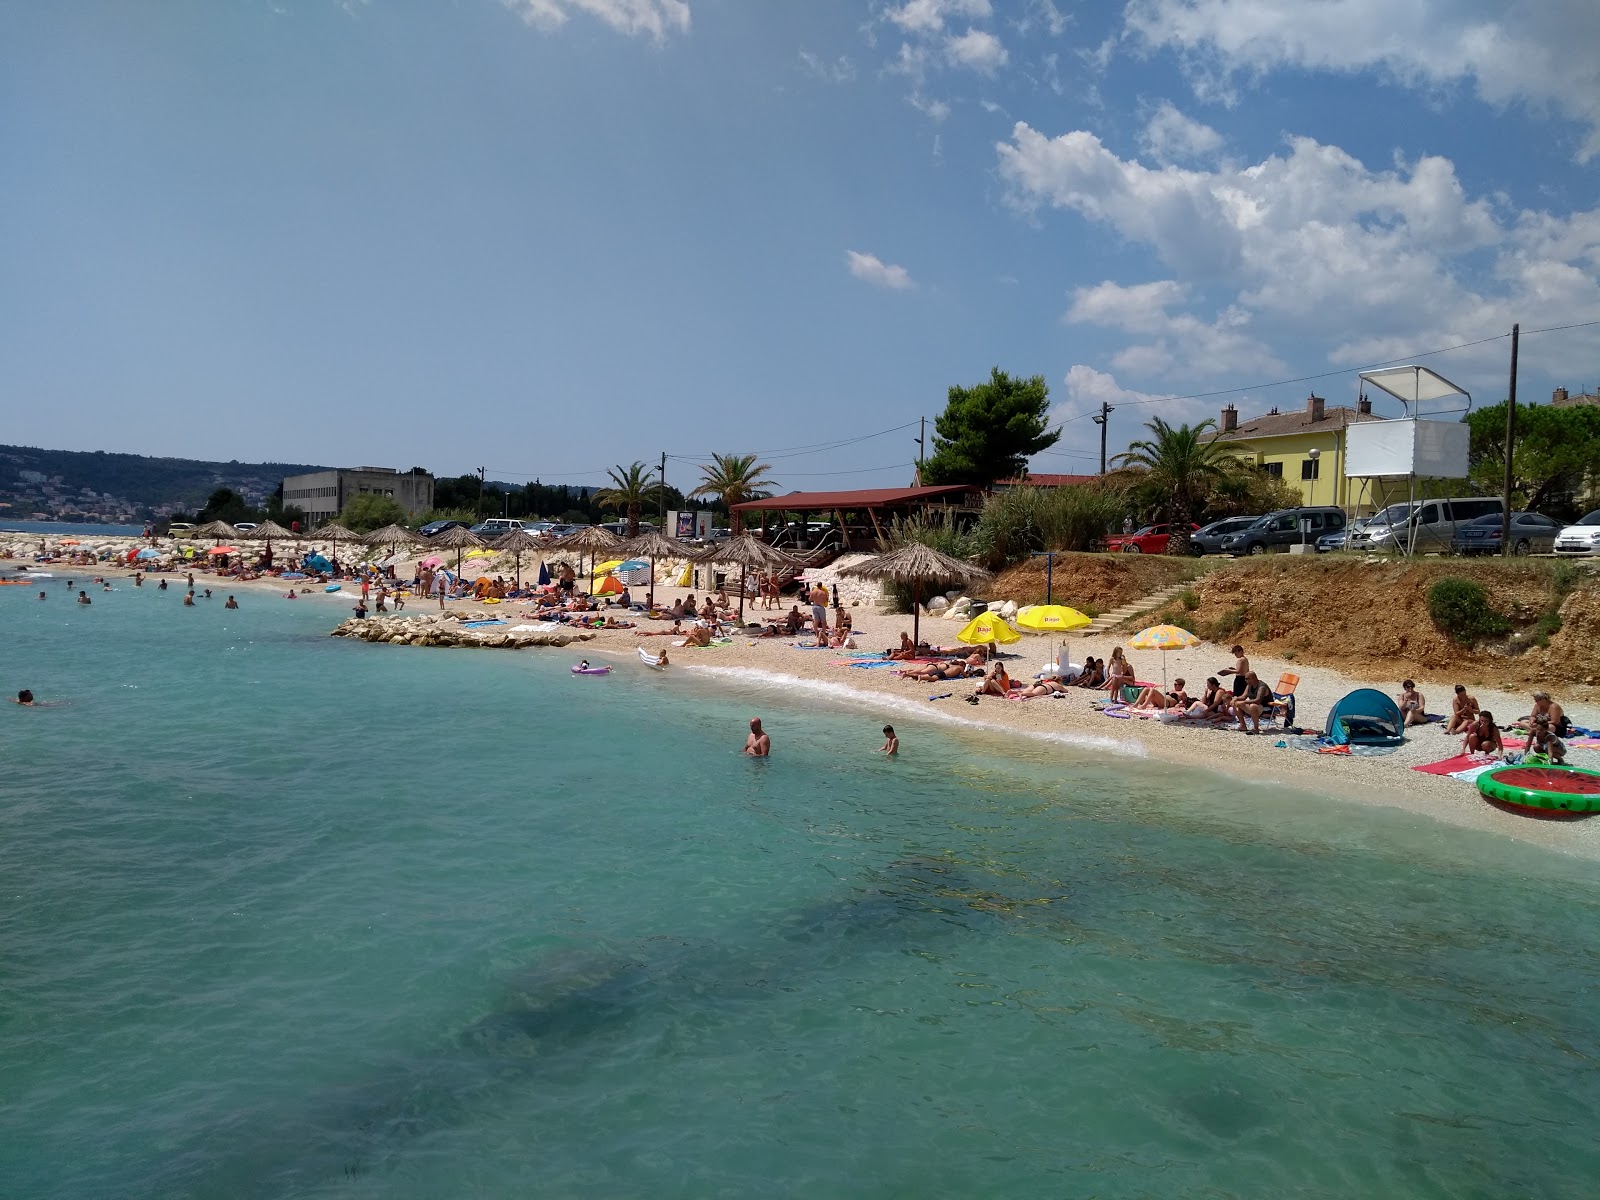 Divulje Plajı'in fotoğrafı plaj tatil beldesi alanı